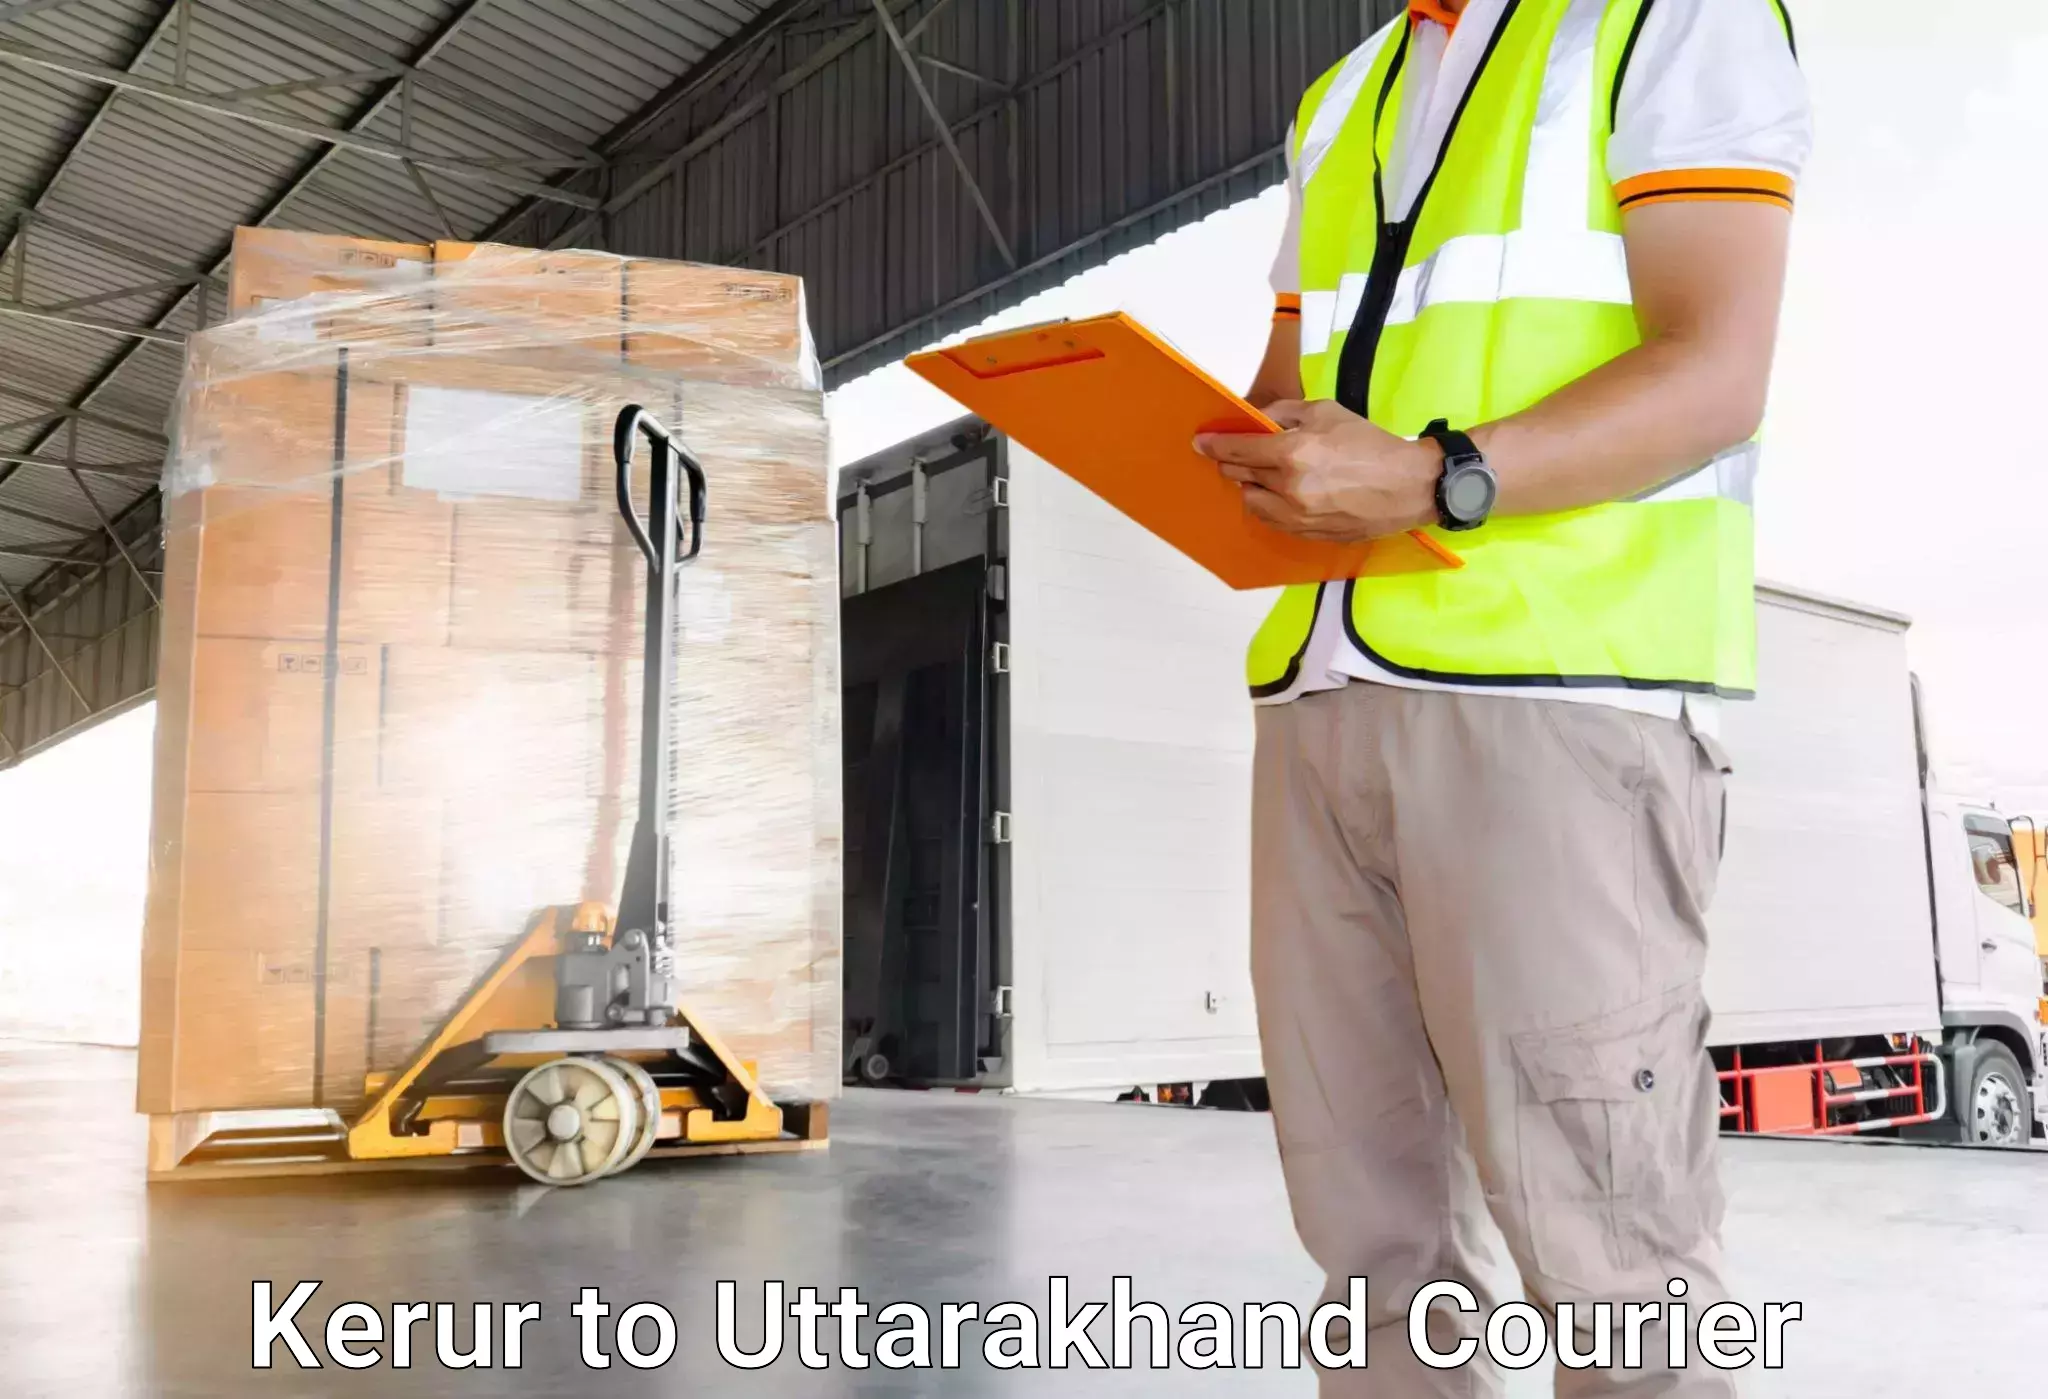 Nationwide luggage courier Kerur to Uttarakhand